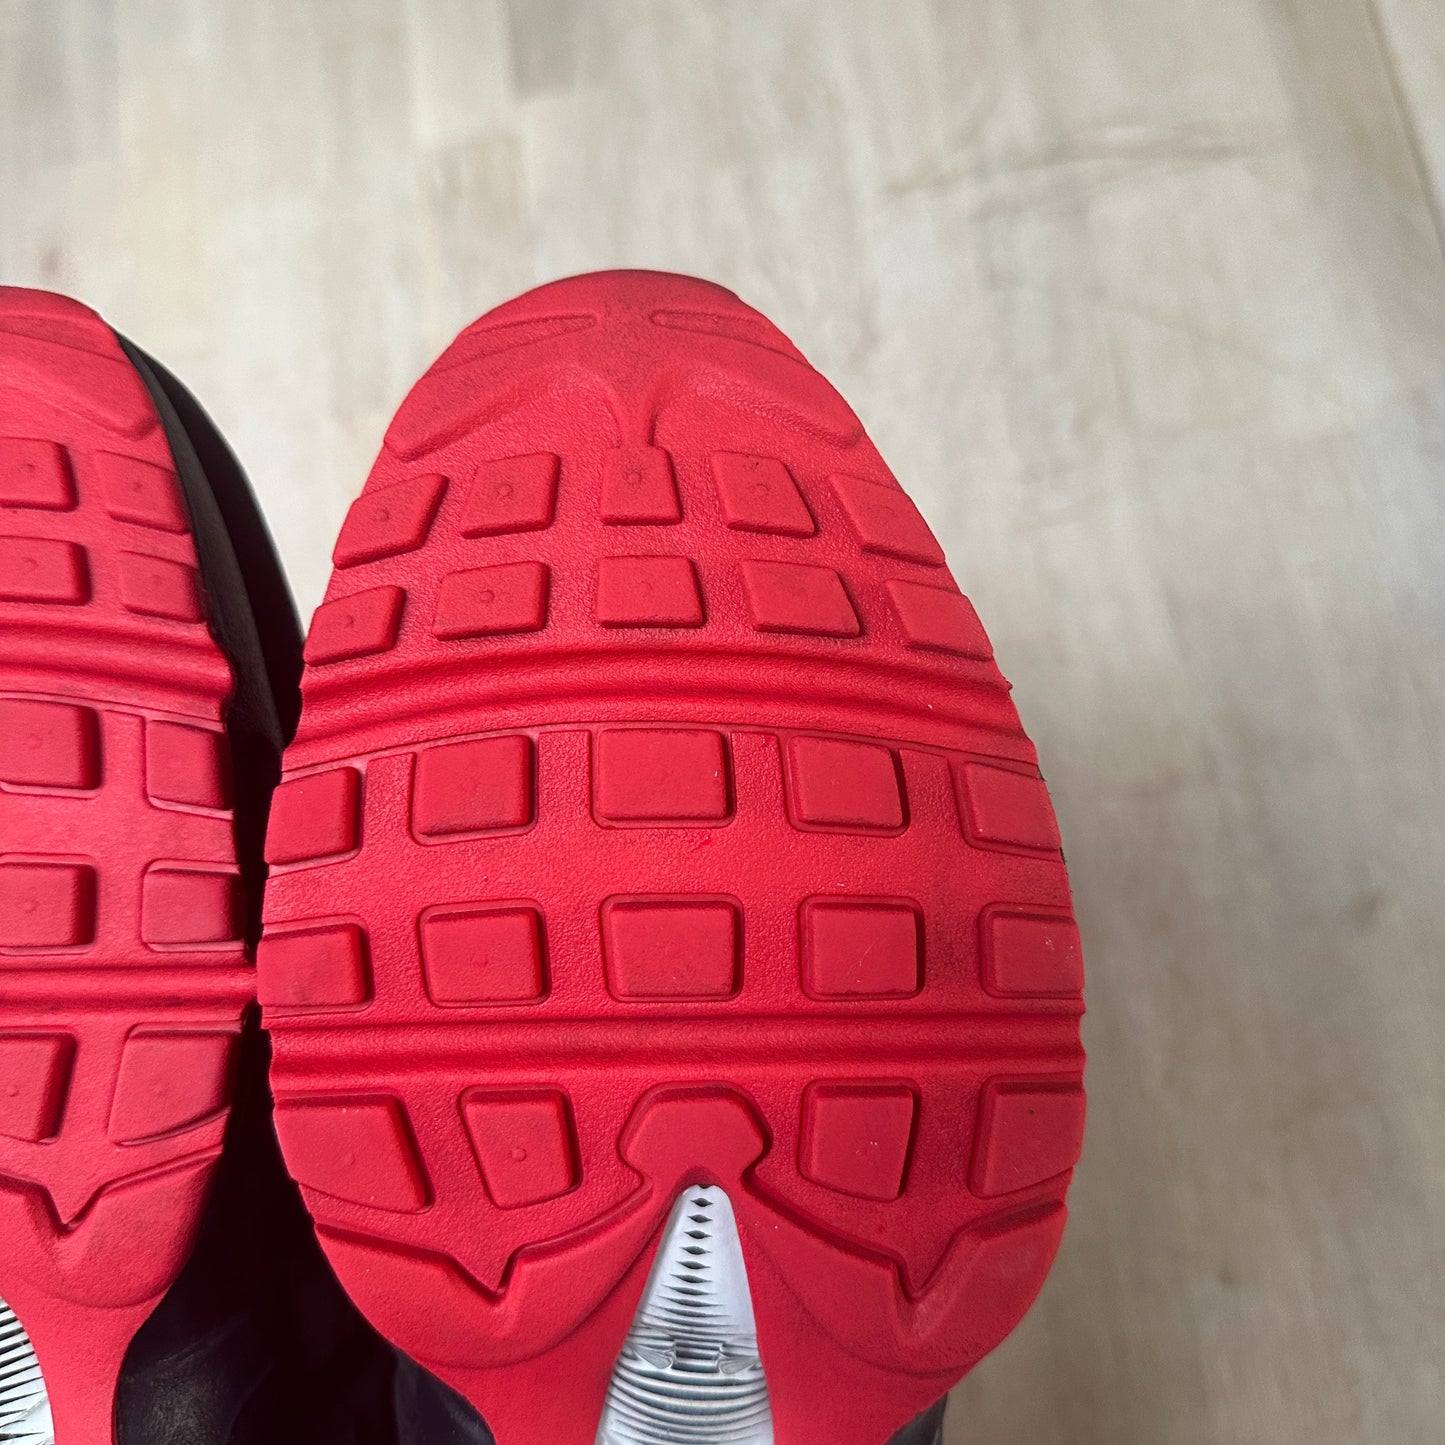 Nike Air Max 95 - Black/Red IDs - UK10